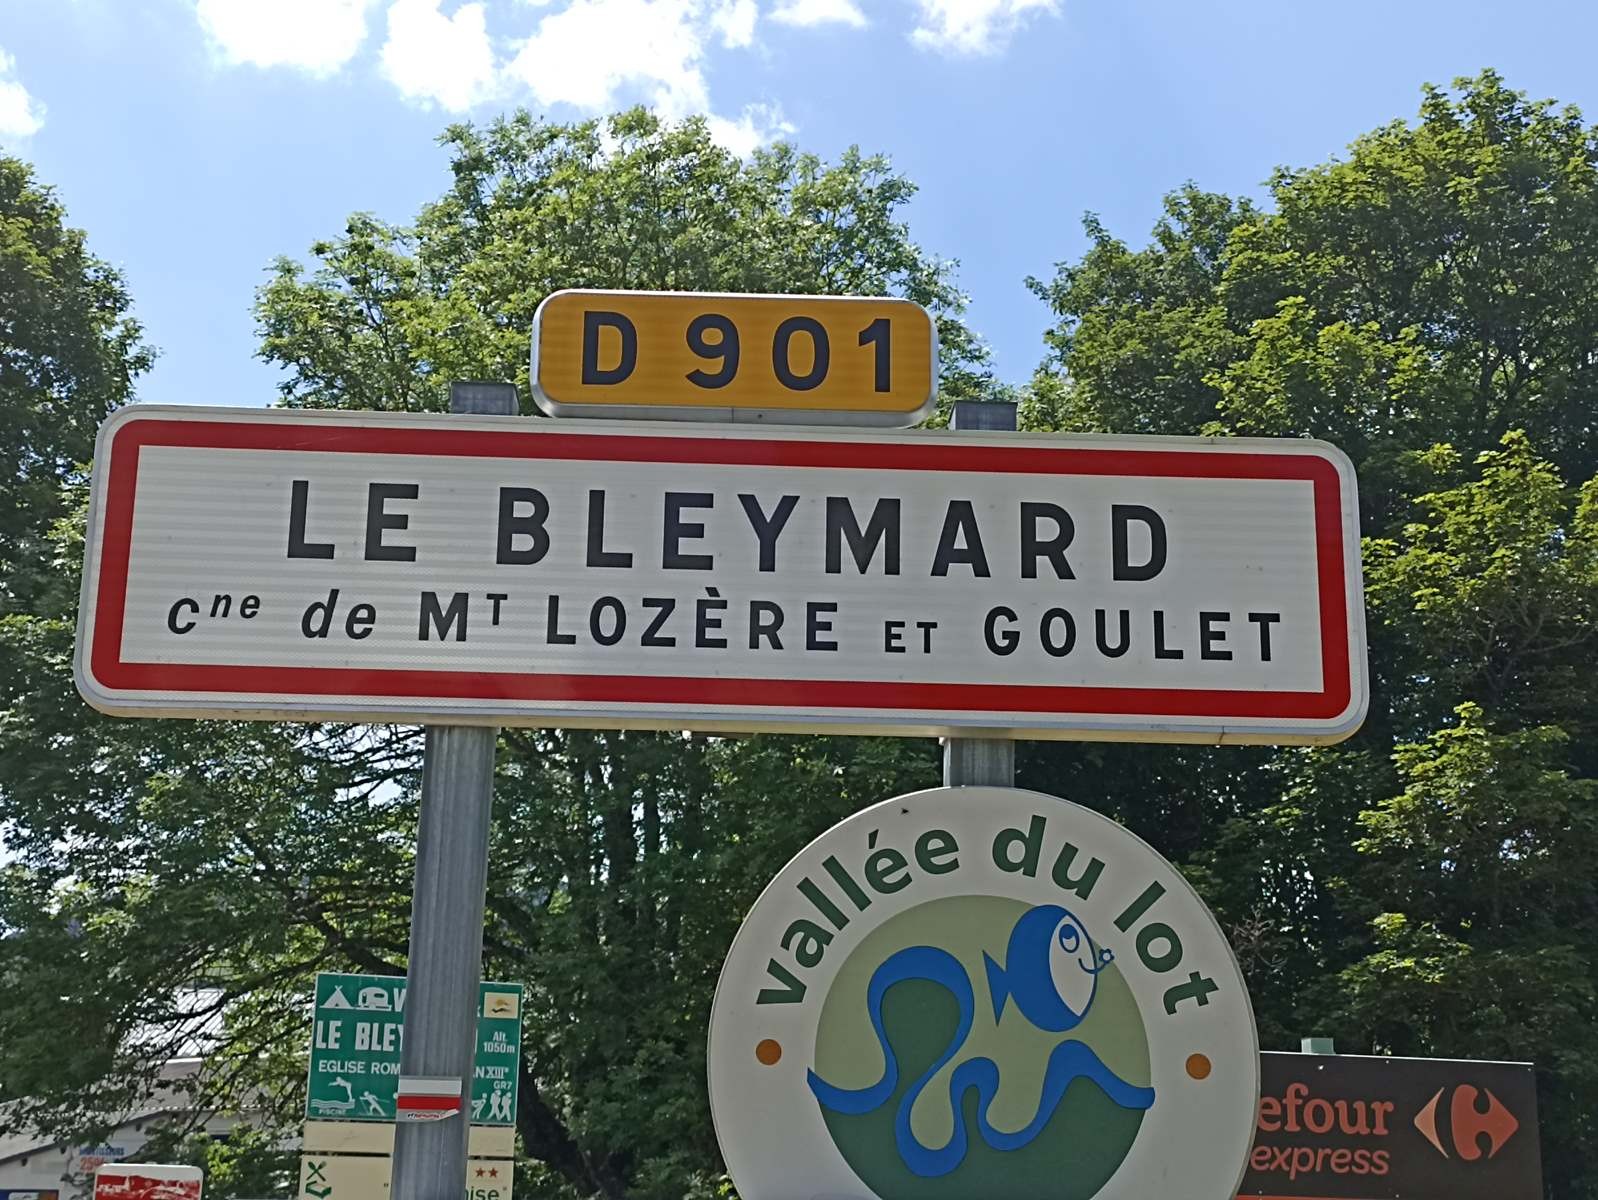 14 Juin: Septième étape de Chabalier au Bleymard par Chasseradès